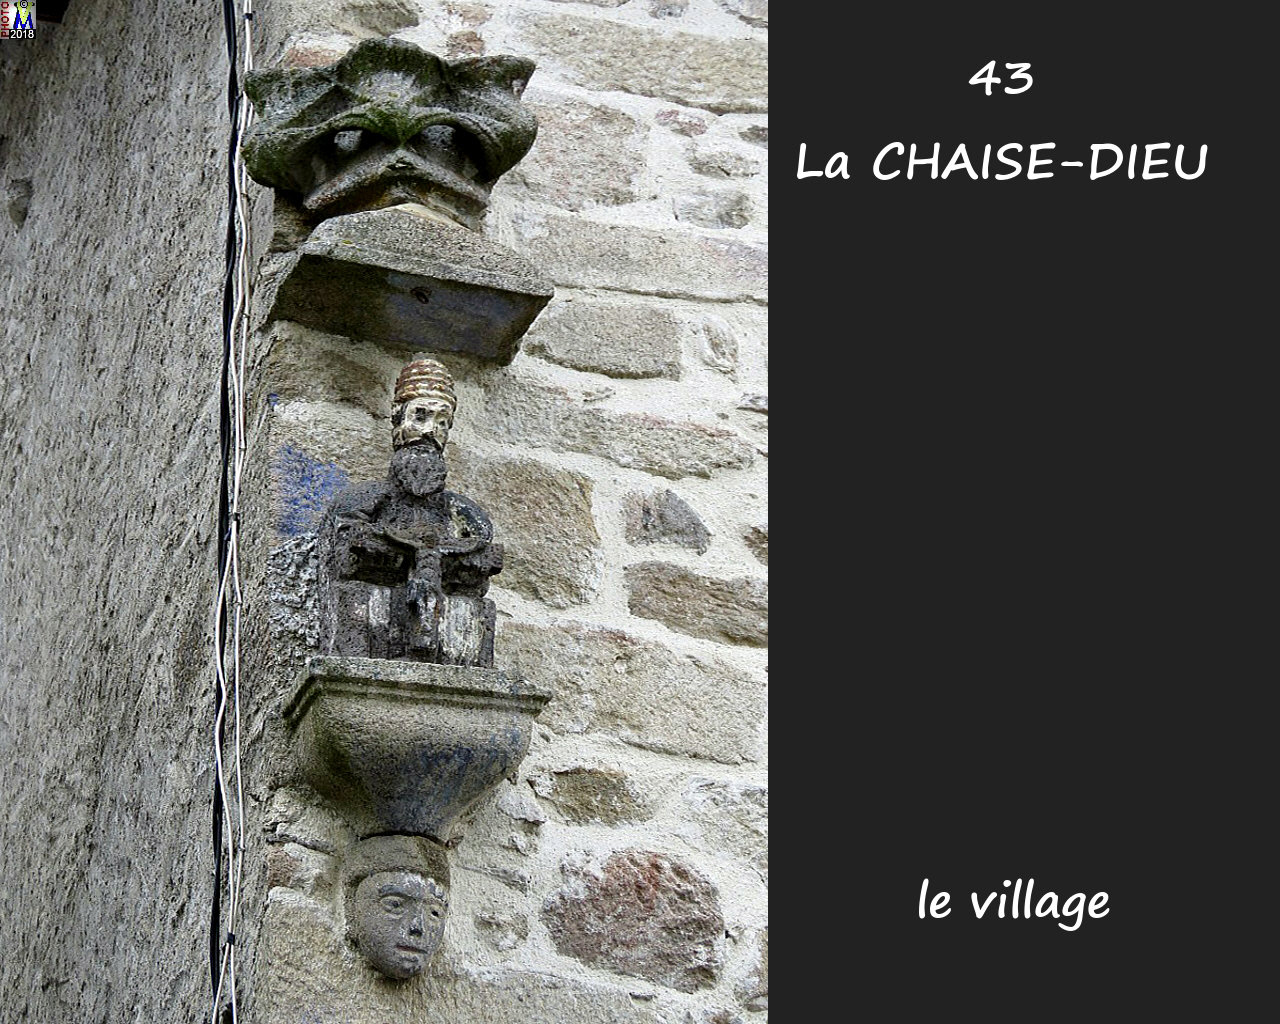 43CHAISE-DIEU_village_140.jpg